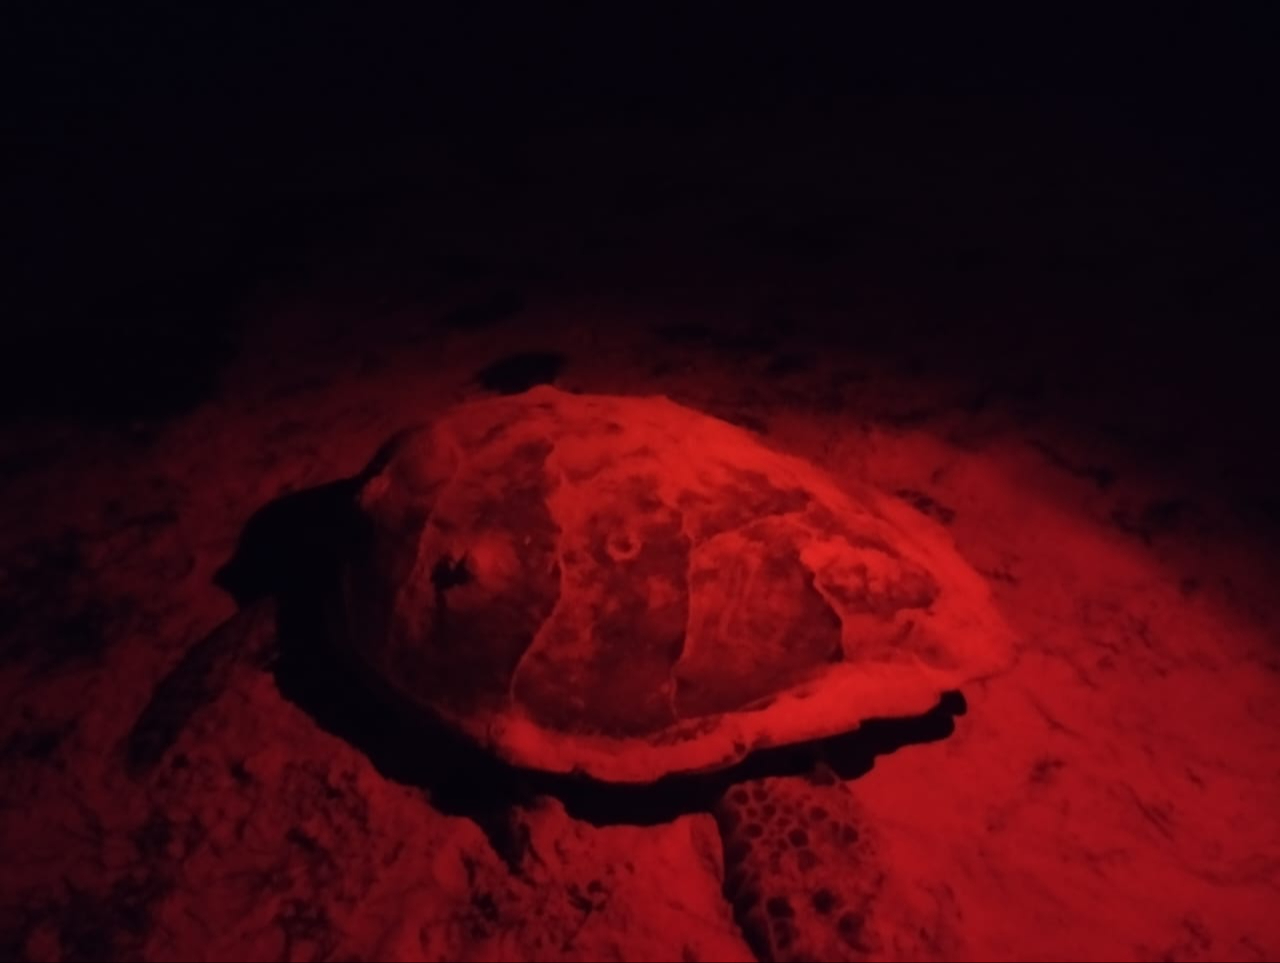 La tortuga de desorientó, ingresando hasta el patio de una casa